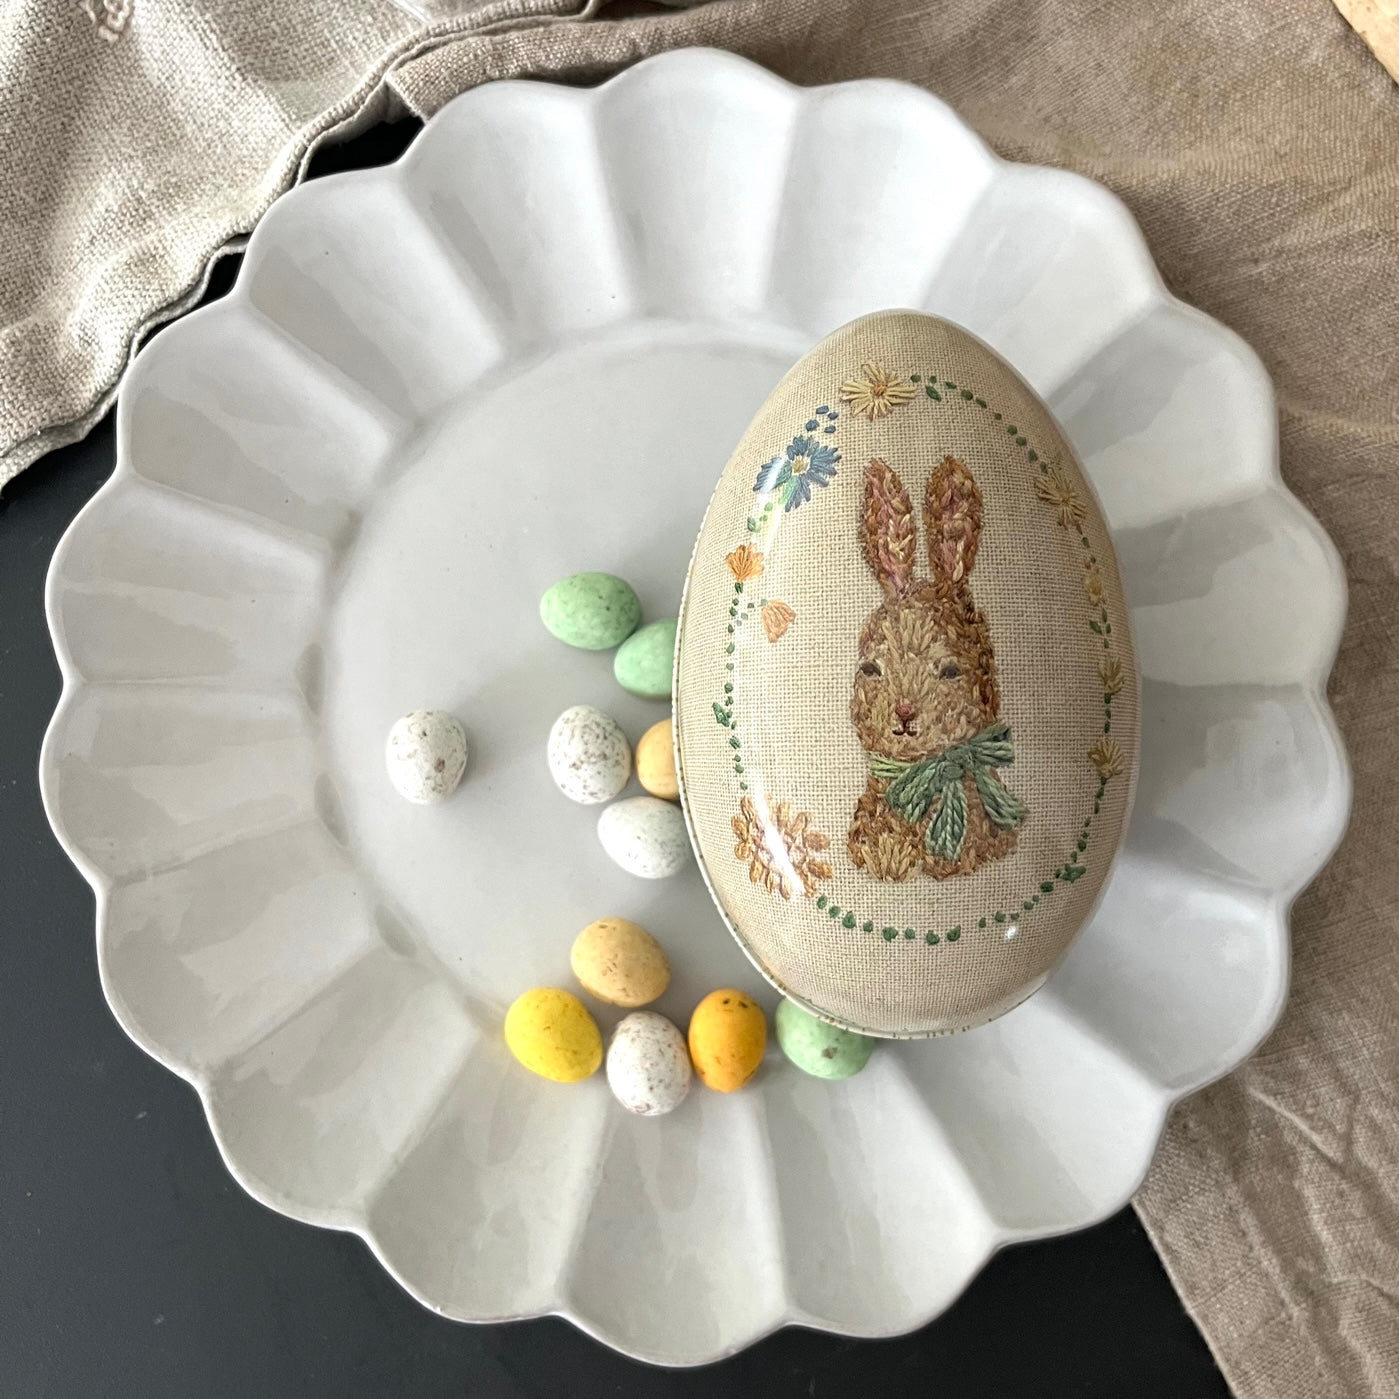 Belgian Easter eggs